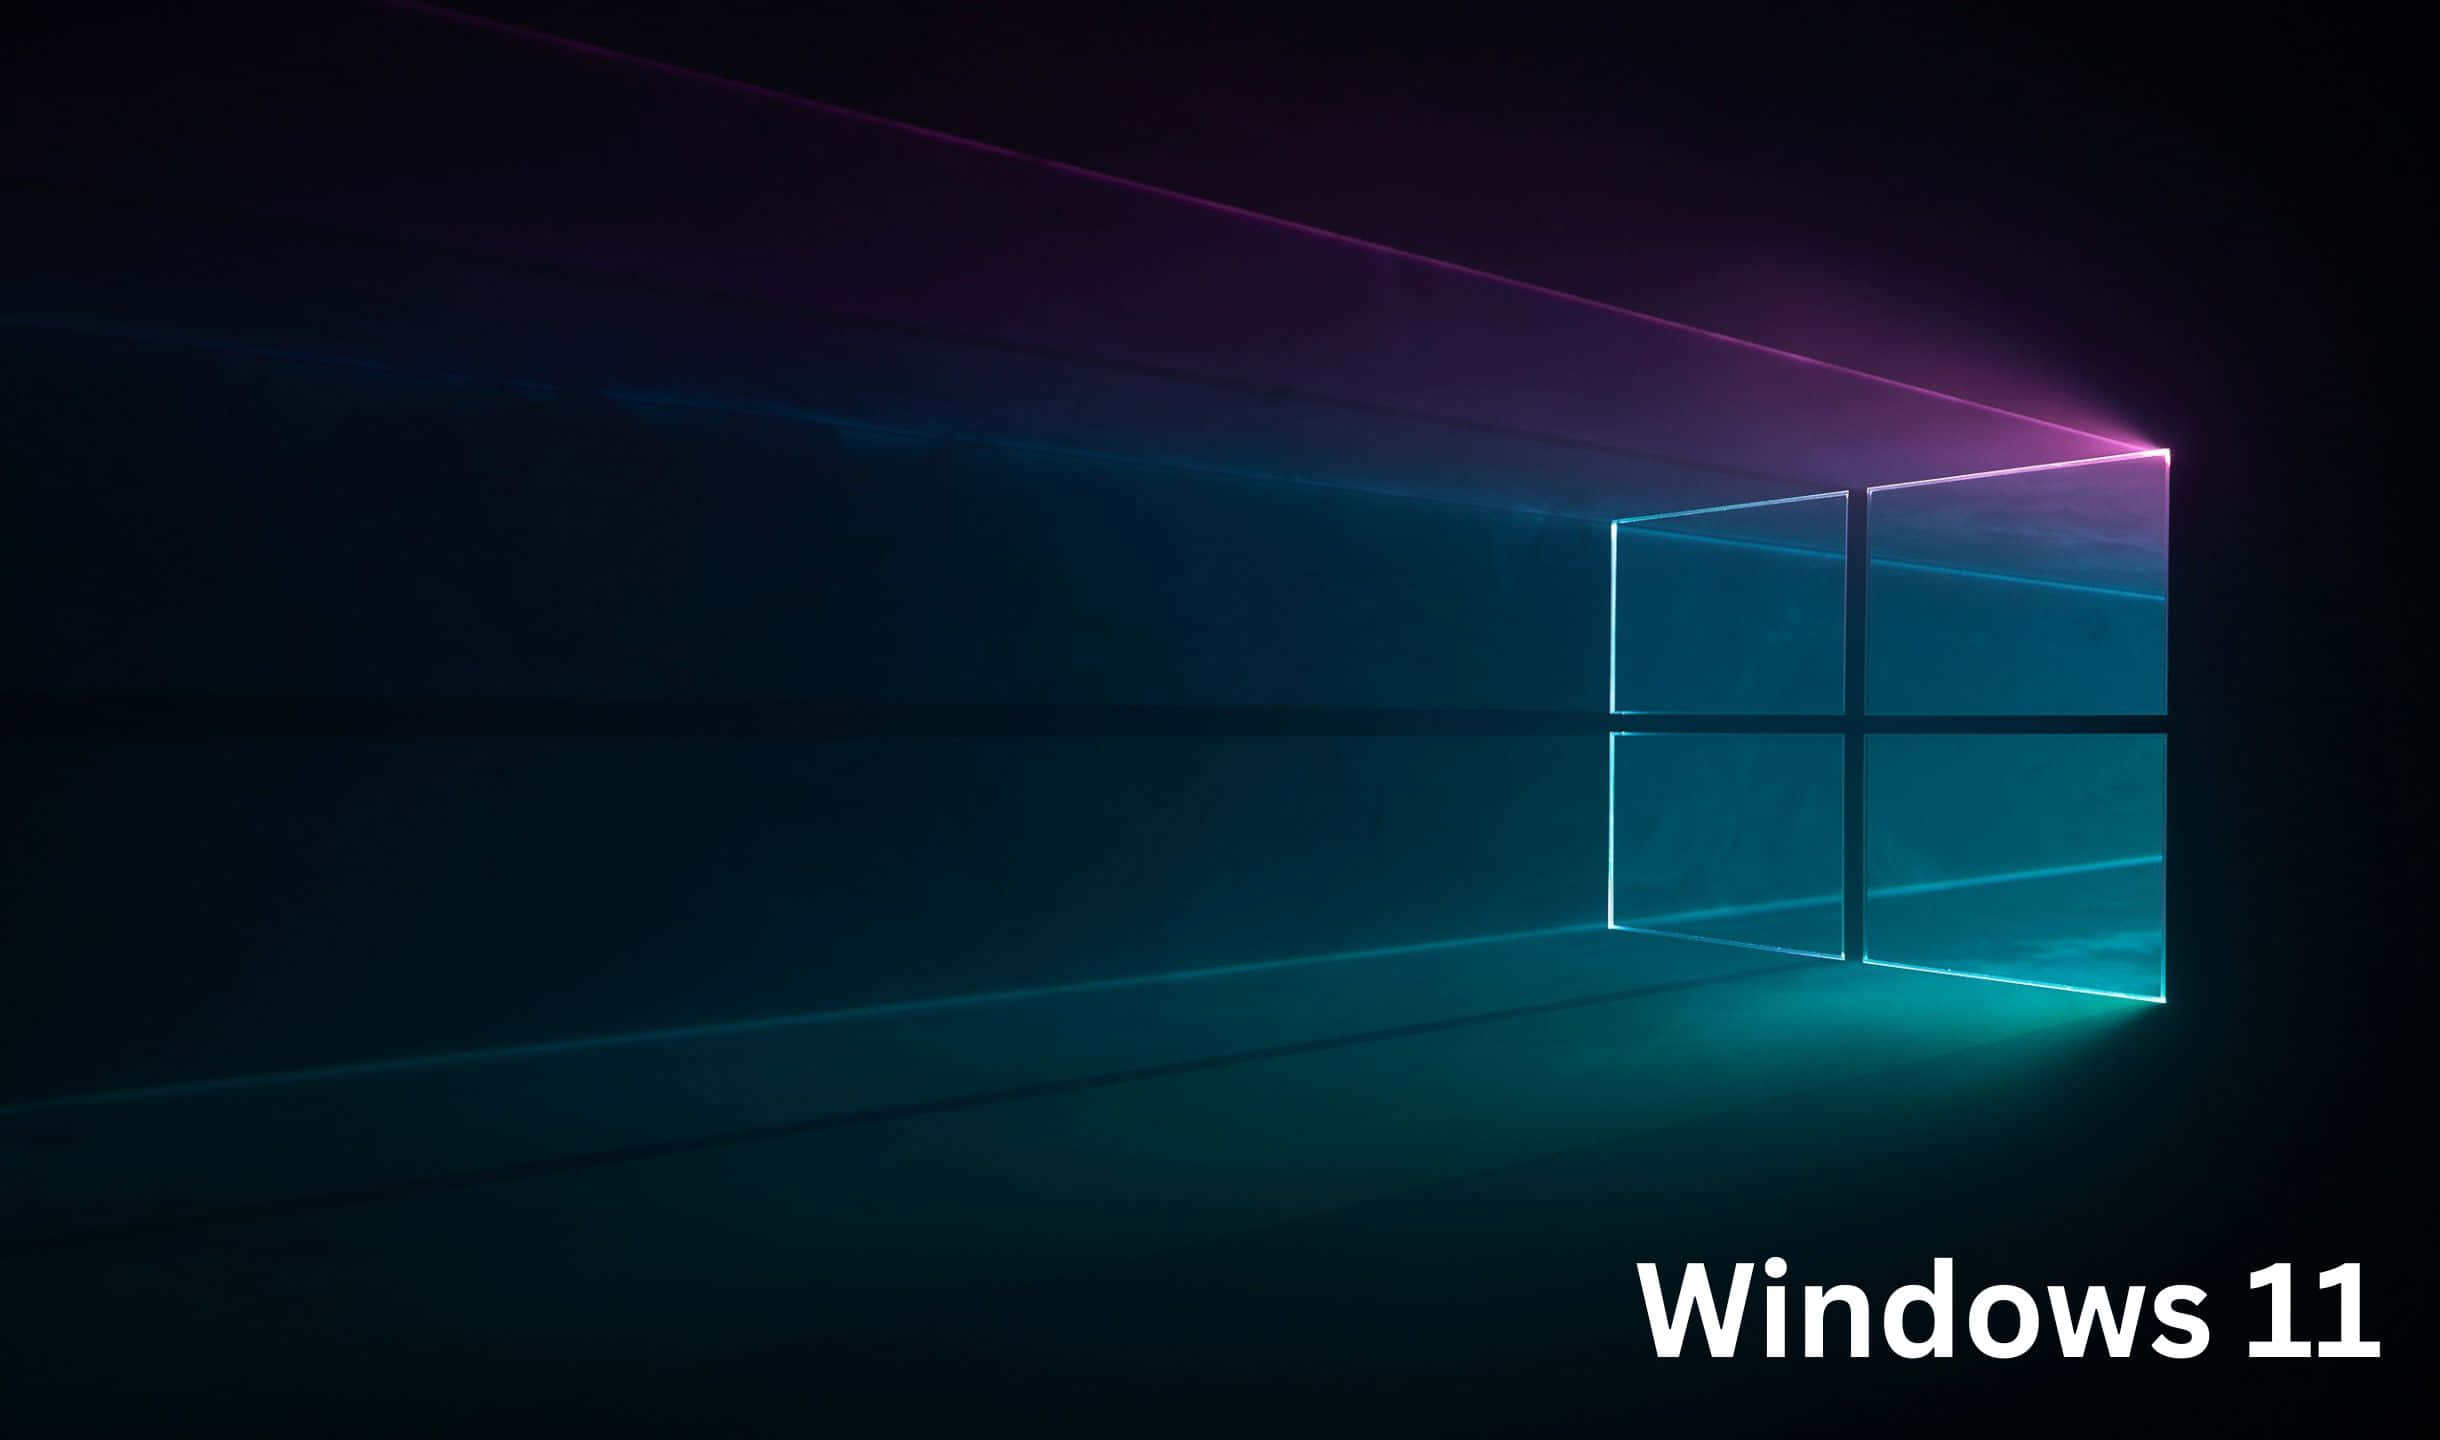 Erlebensie Die Kraft Von Windows 11 Mit Seinen Neuesten Funktionen.